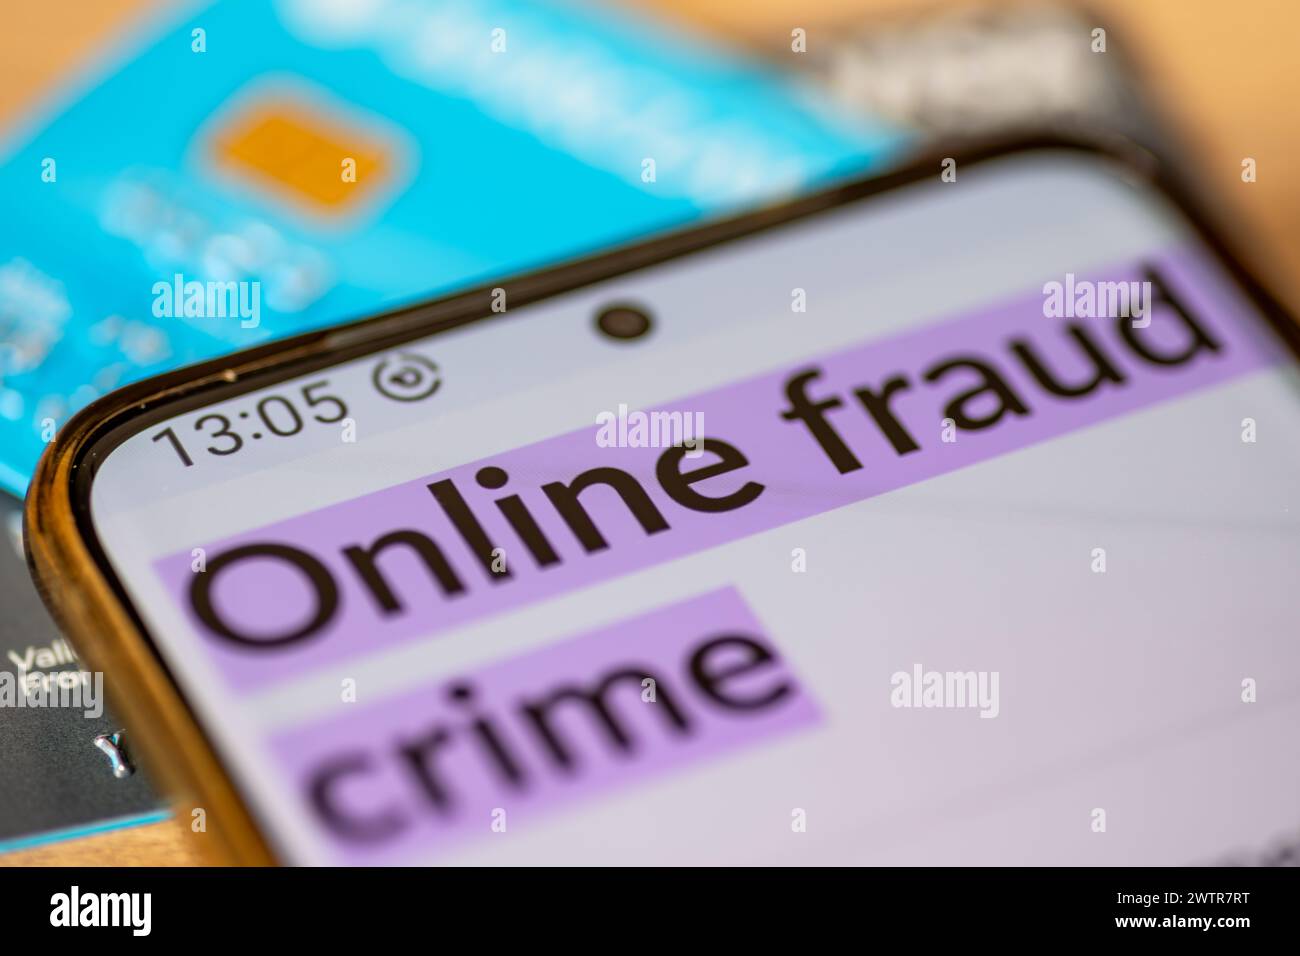 Eine Makroaufnahme eines Mobiltelefons mit den Worten Online-Betrug Verbrechen auf Kredit, Debit-Bankkarten. Ein Konzept der Online-Betrugskriminalität. Stockfoto